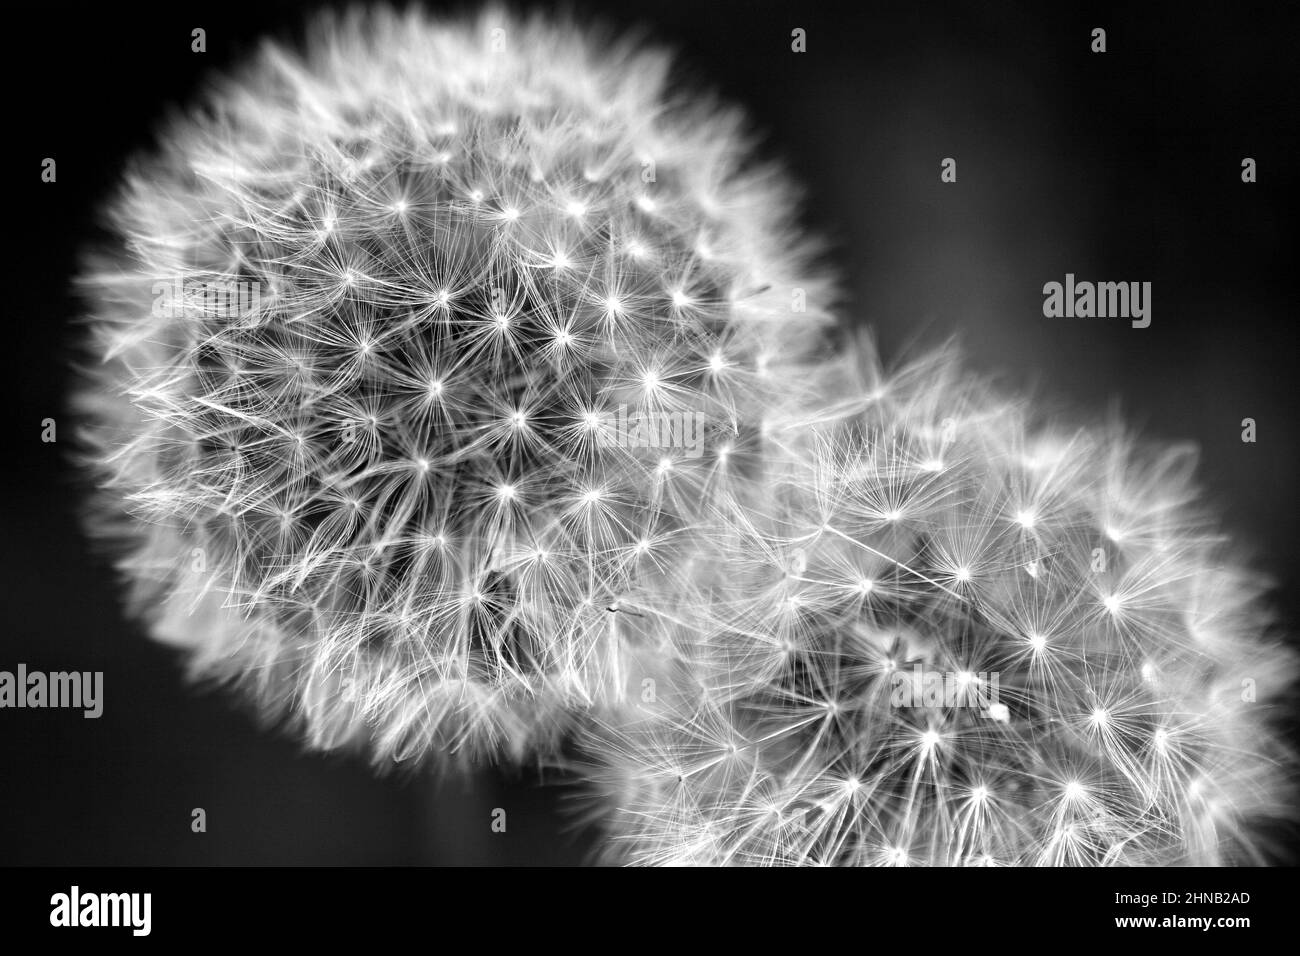 Schwarz-Weiß Nahaufnahme von 2 überlappenden weißen Dandelionenköpfen Stockfoto